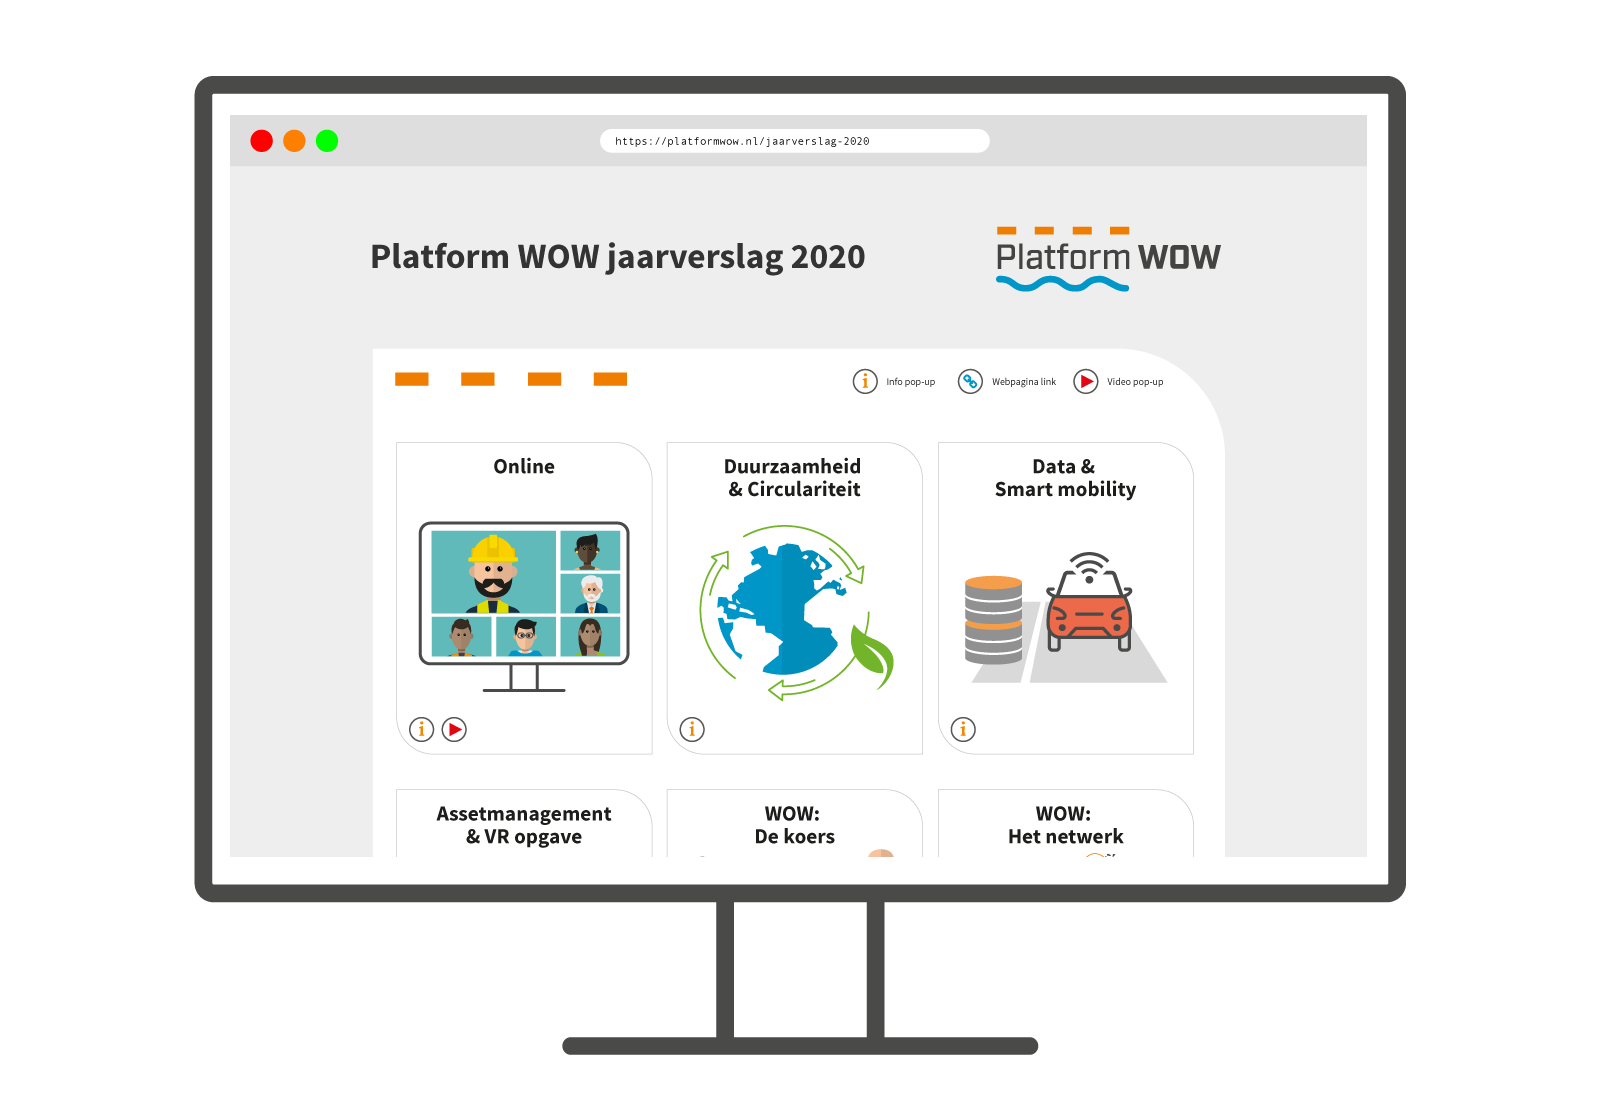 Platform WOW jaarverslag 2020